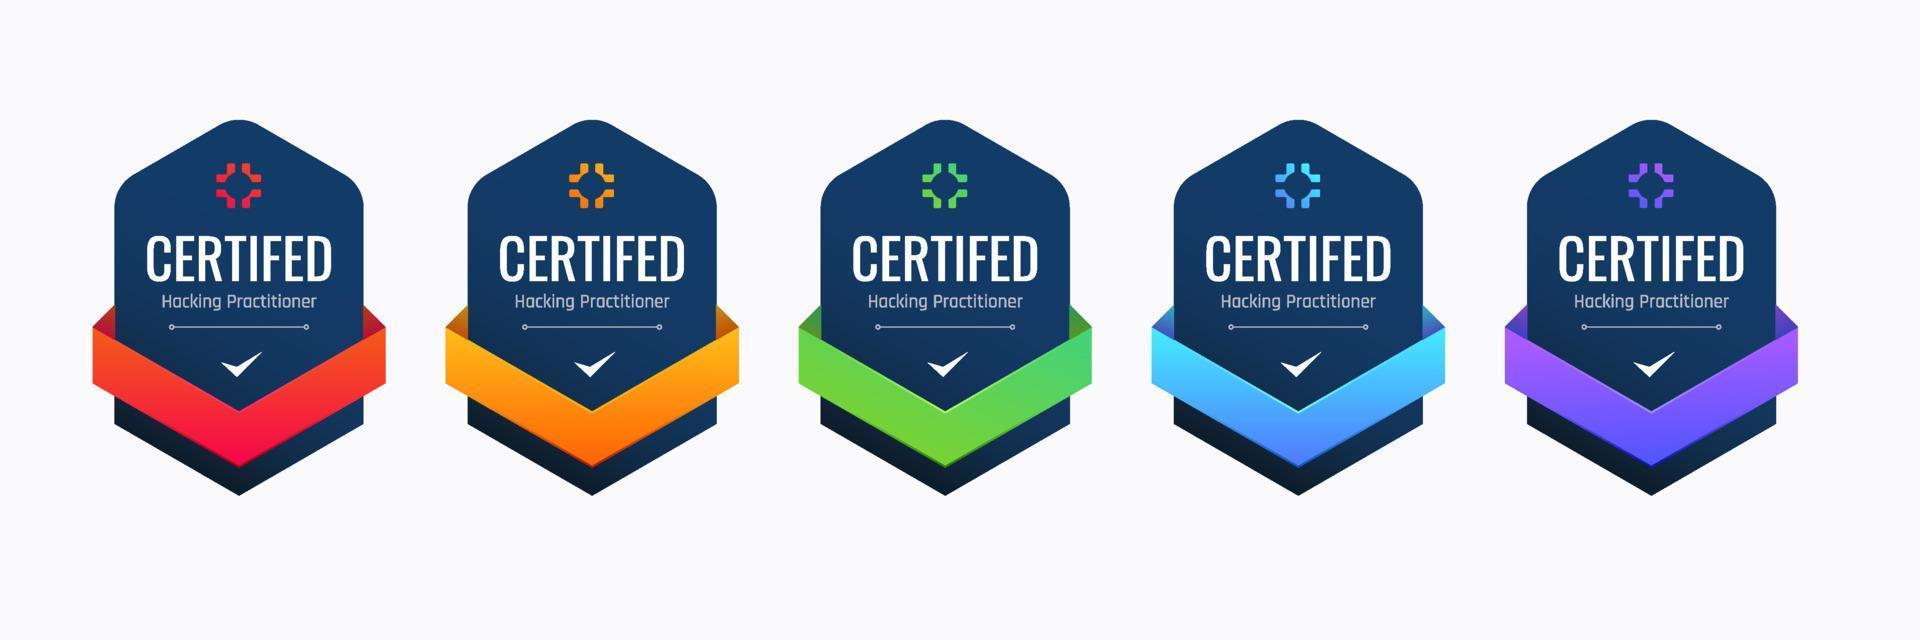 certificado crachá Projeto para hacking praticante. profissional computador segurança certificações Sediada em critério. vetor